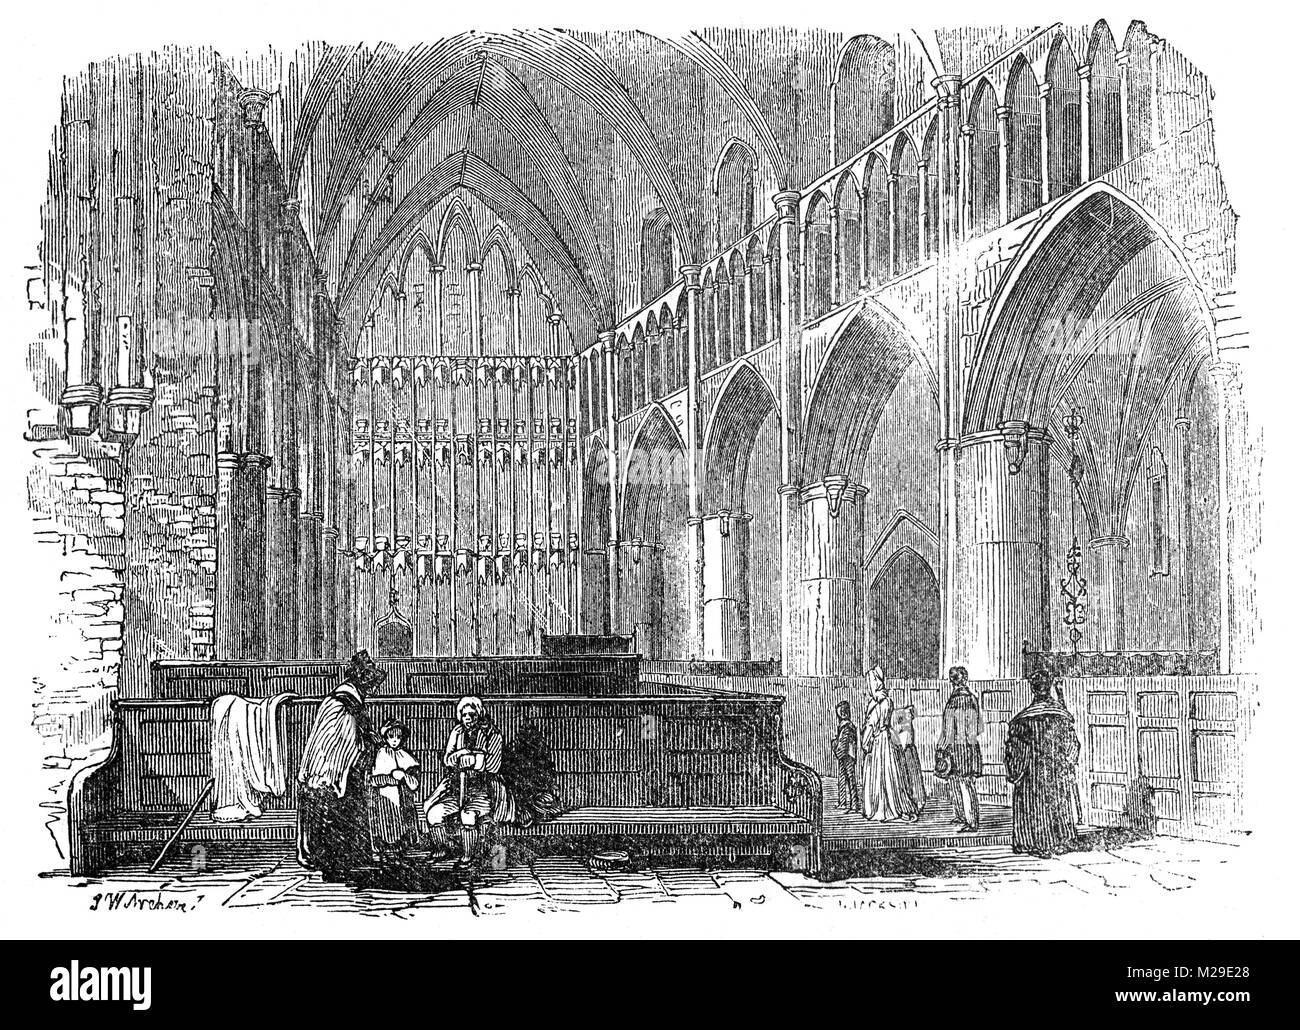 Le choeur de St Mary Overies (maintenant appelé la cathédrale de Southwark) a été l'église d'un prieuré augustinien, Southwark, Prieuré dédié à la Vierge Marie entre 1106 et 1538. L'actuel édifice gothique fut construit entre 1220 et 1420 après que l'église a été gravement endommagé dans le grand incendie de 1212 et se trouve sur la rive sud de la Tamise près de London Bridge, London Banque D'Images